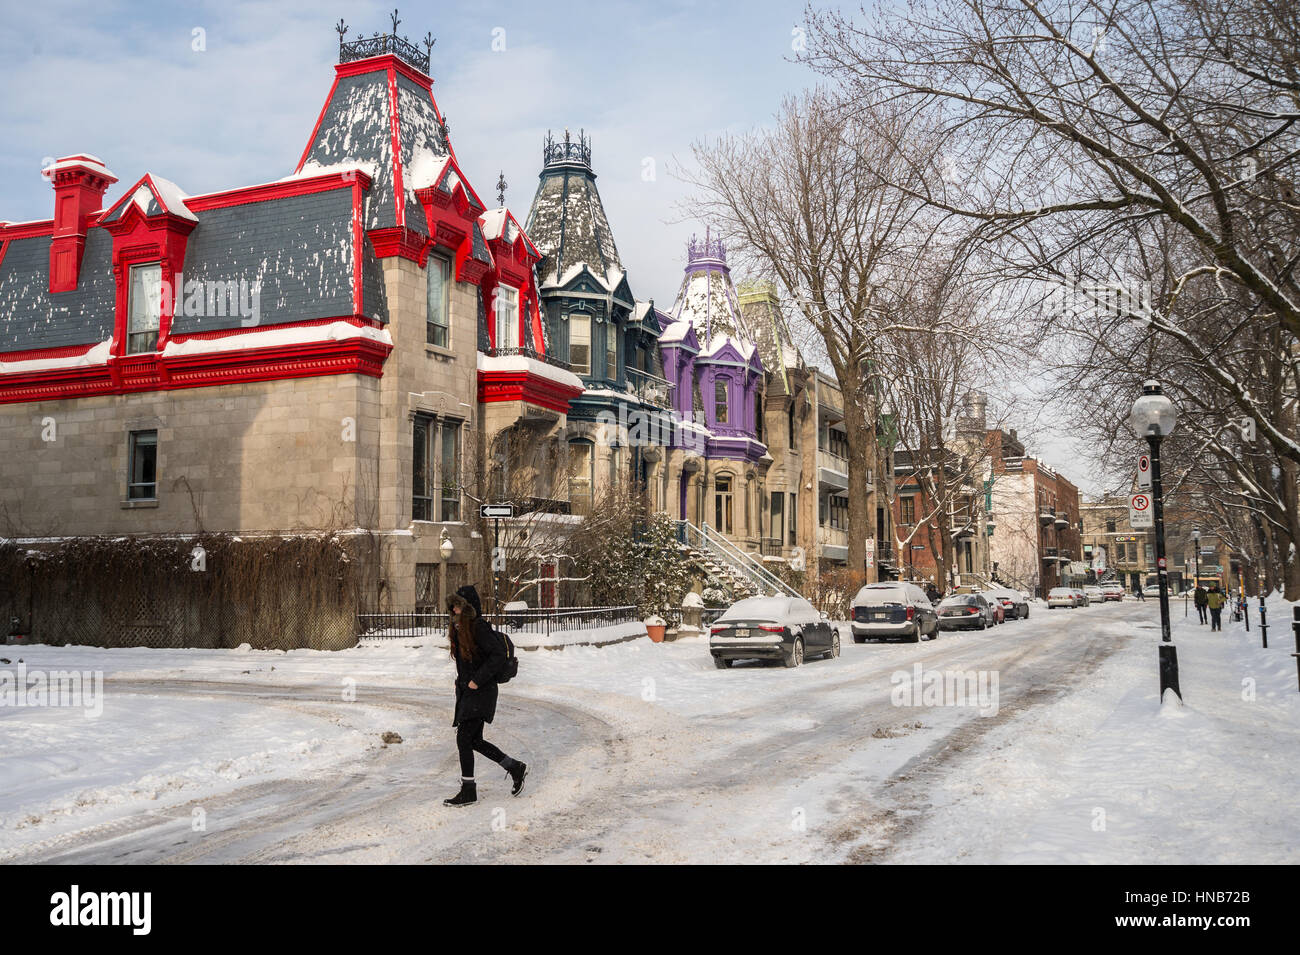 Montréal, CA - 17 décembre 2016 : Victorian maisons colorées dans Square Saint Louis en hiver Banque D'Images